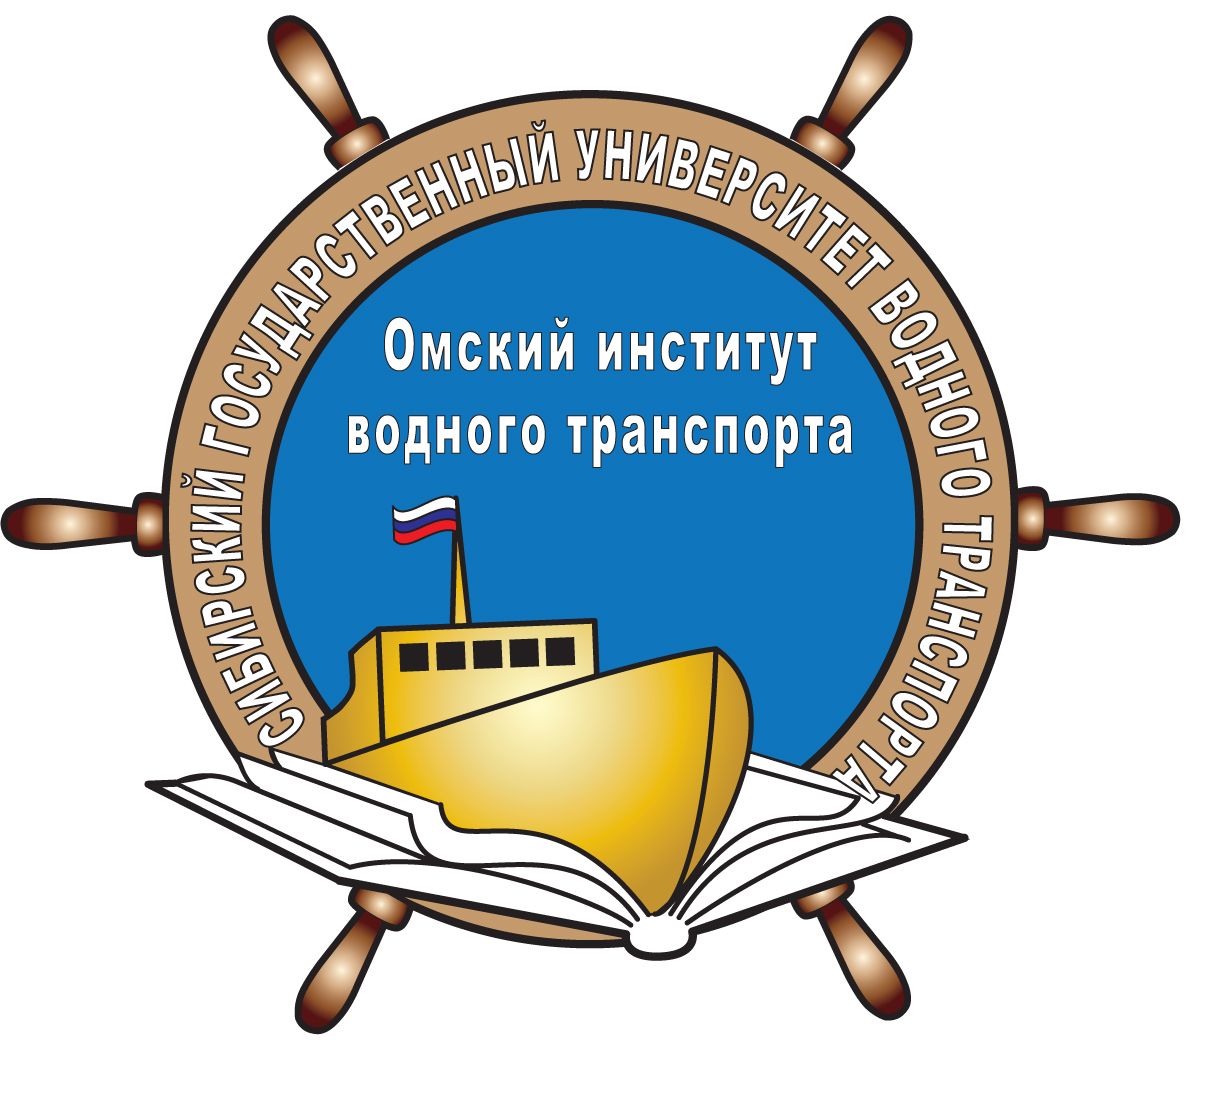 Омский институт водного транспорта